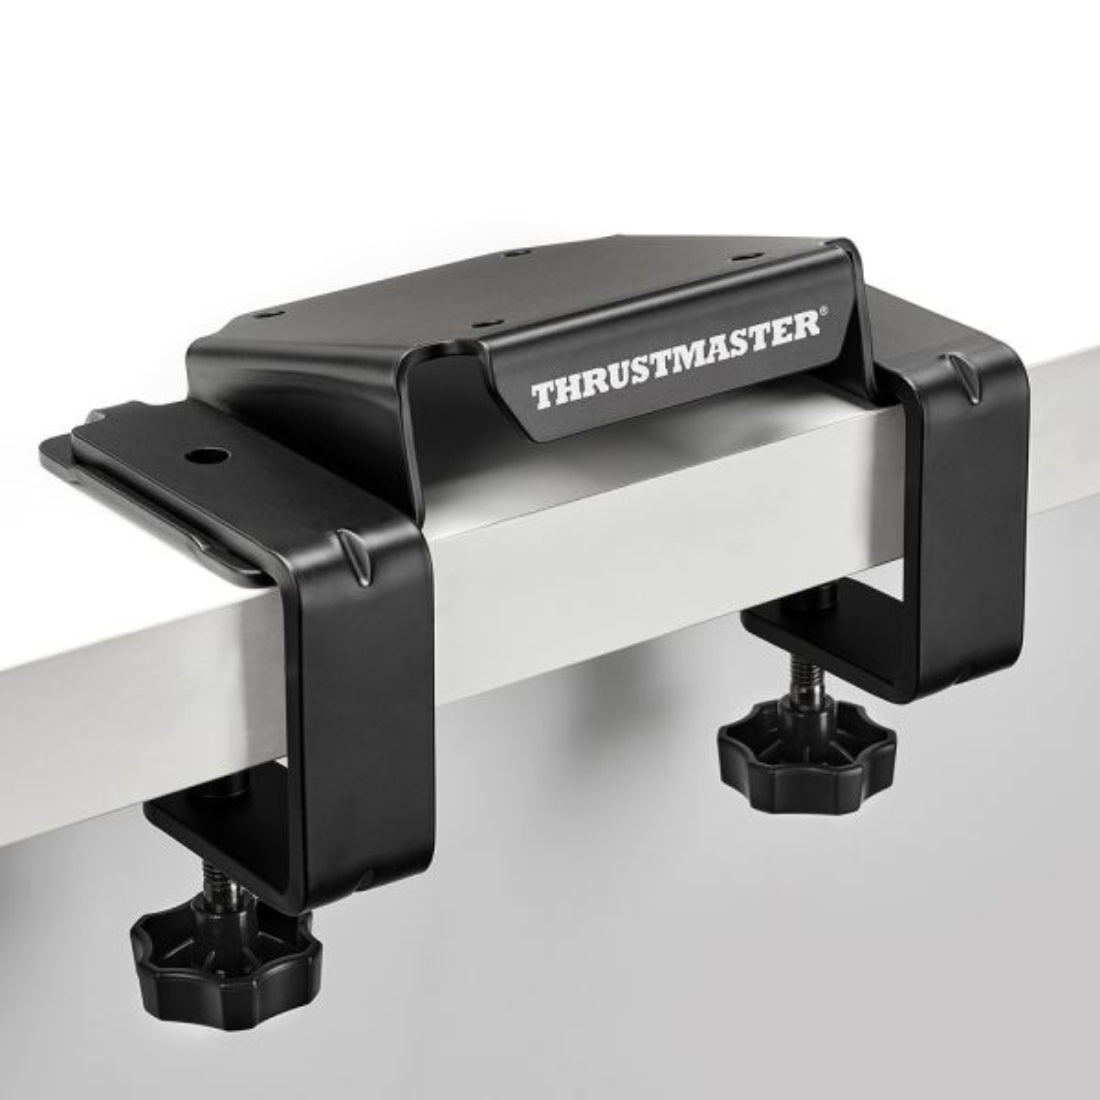 Thrustmaster T818 Desk Mounting Kit - قاعدة محاكي طيران - Store 974 | ستور ٩٧٤